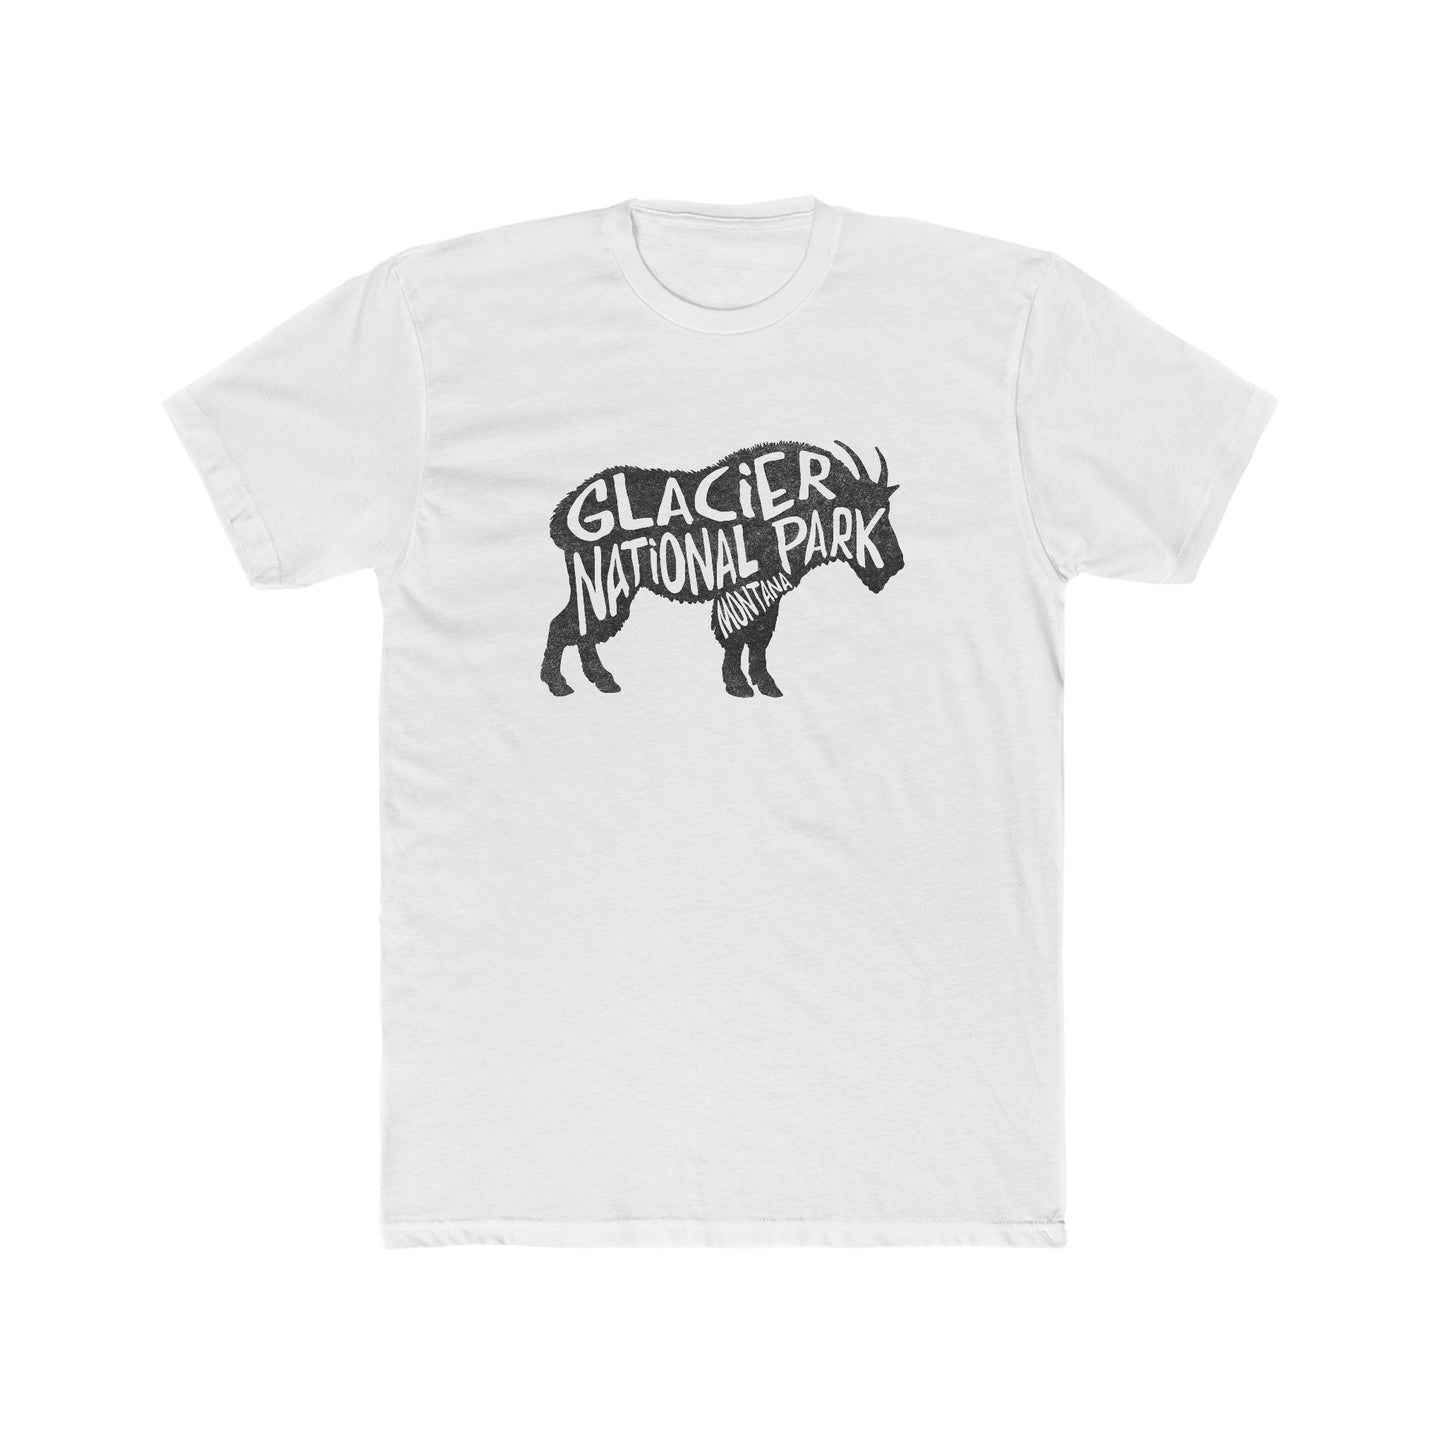 Glacier National Park T-Shirt - Mountain Goat